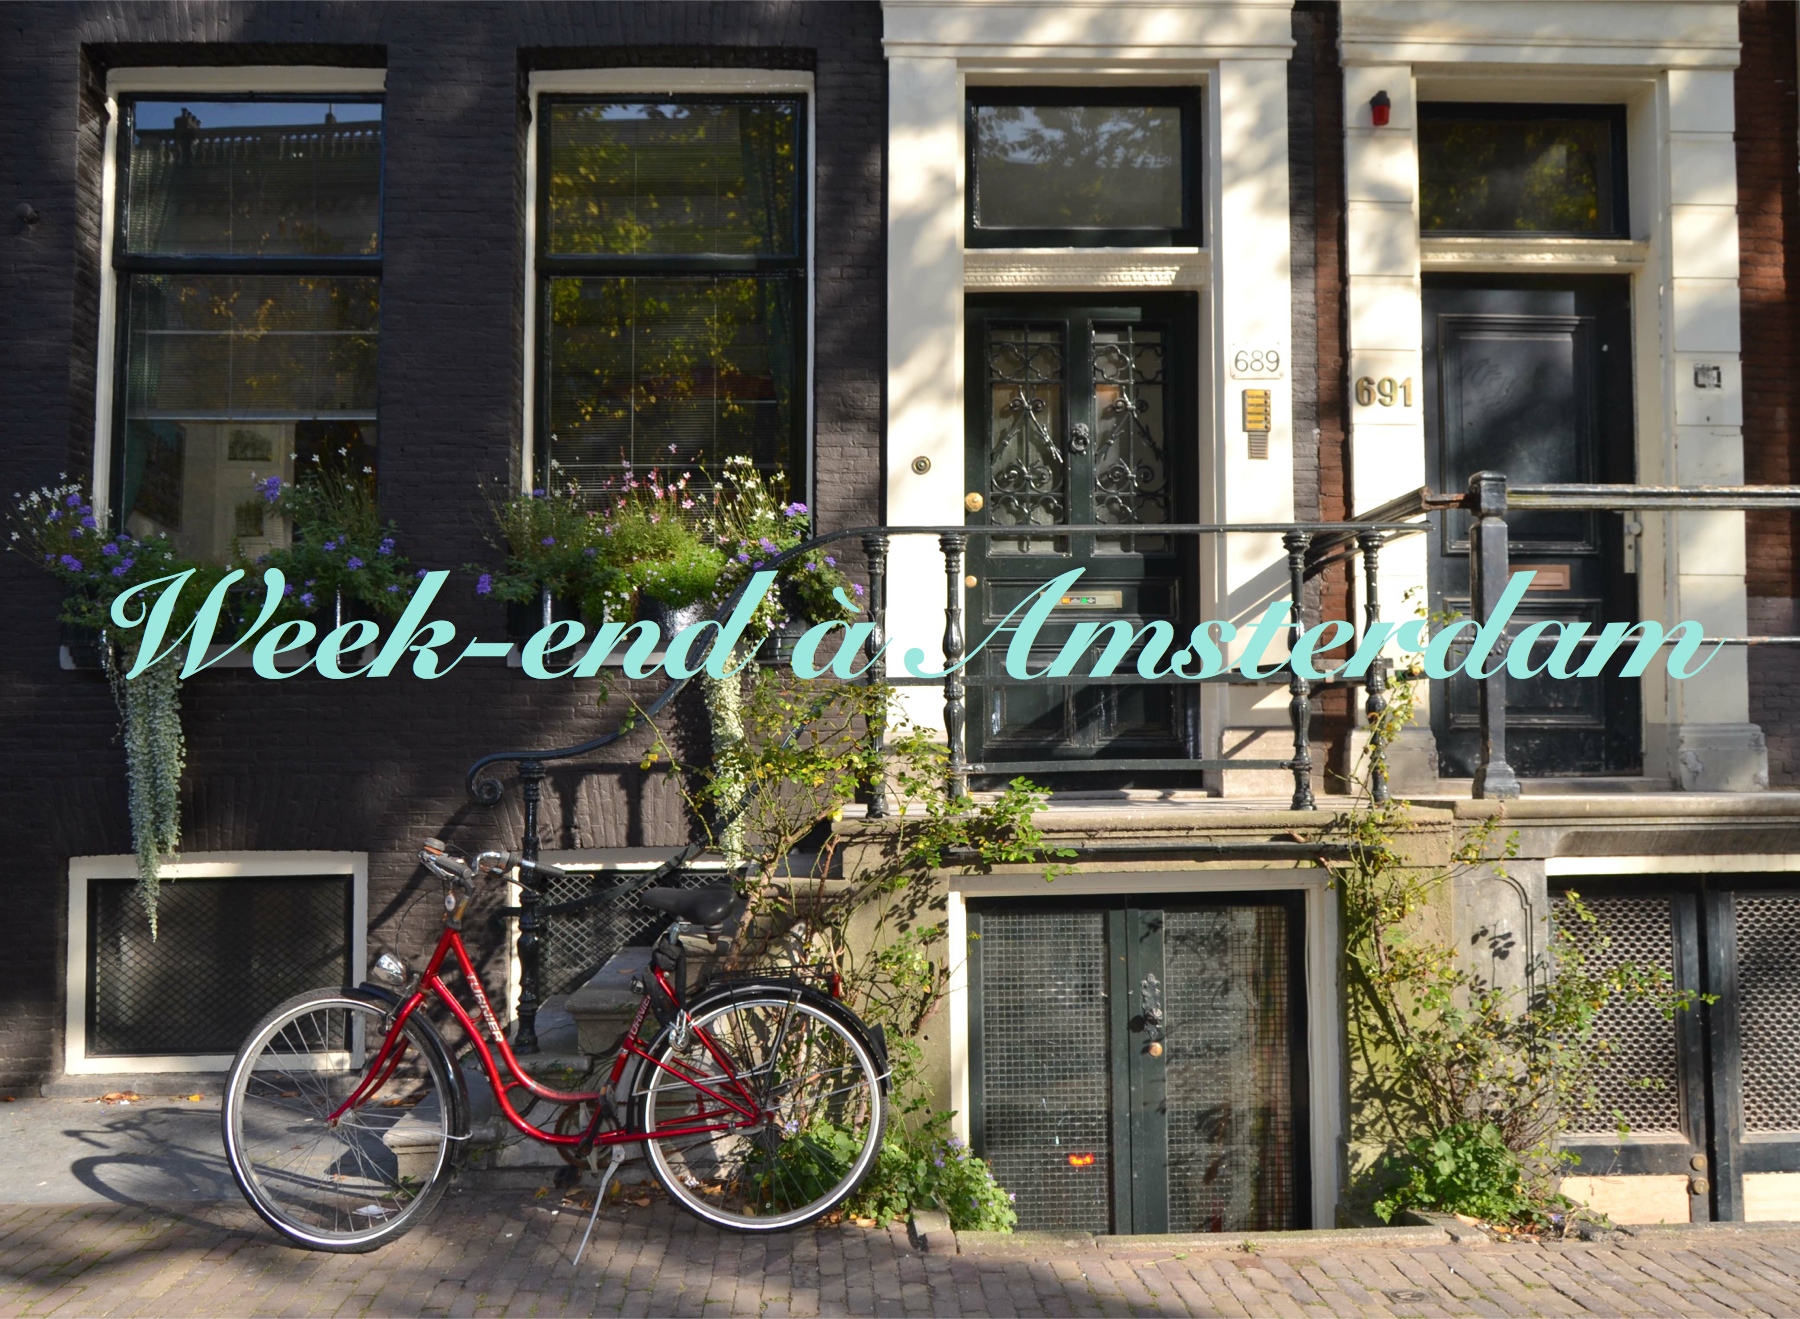 Lire la suite à propos de l’article Week-end à Amsterdam